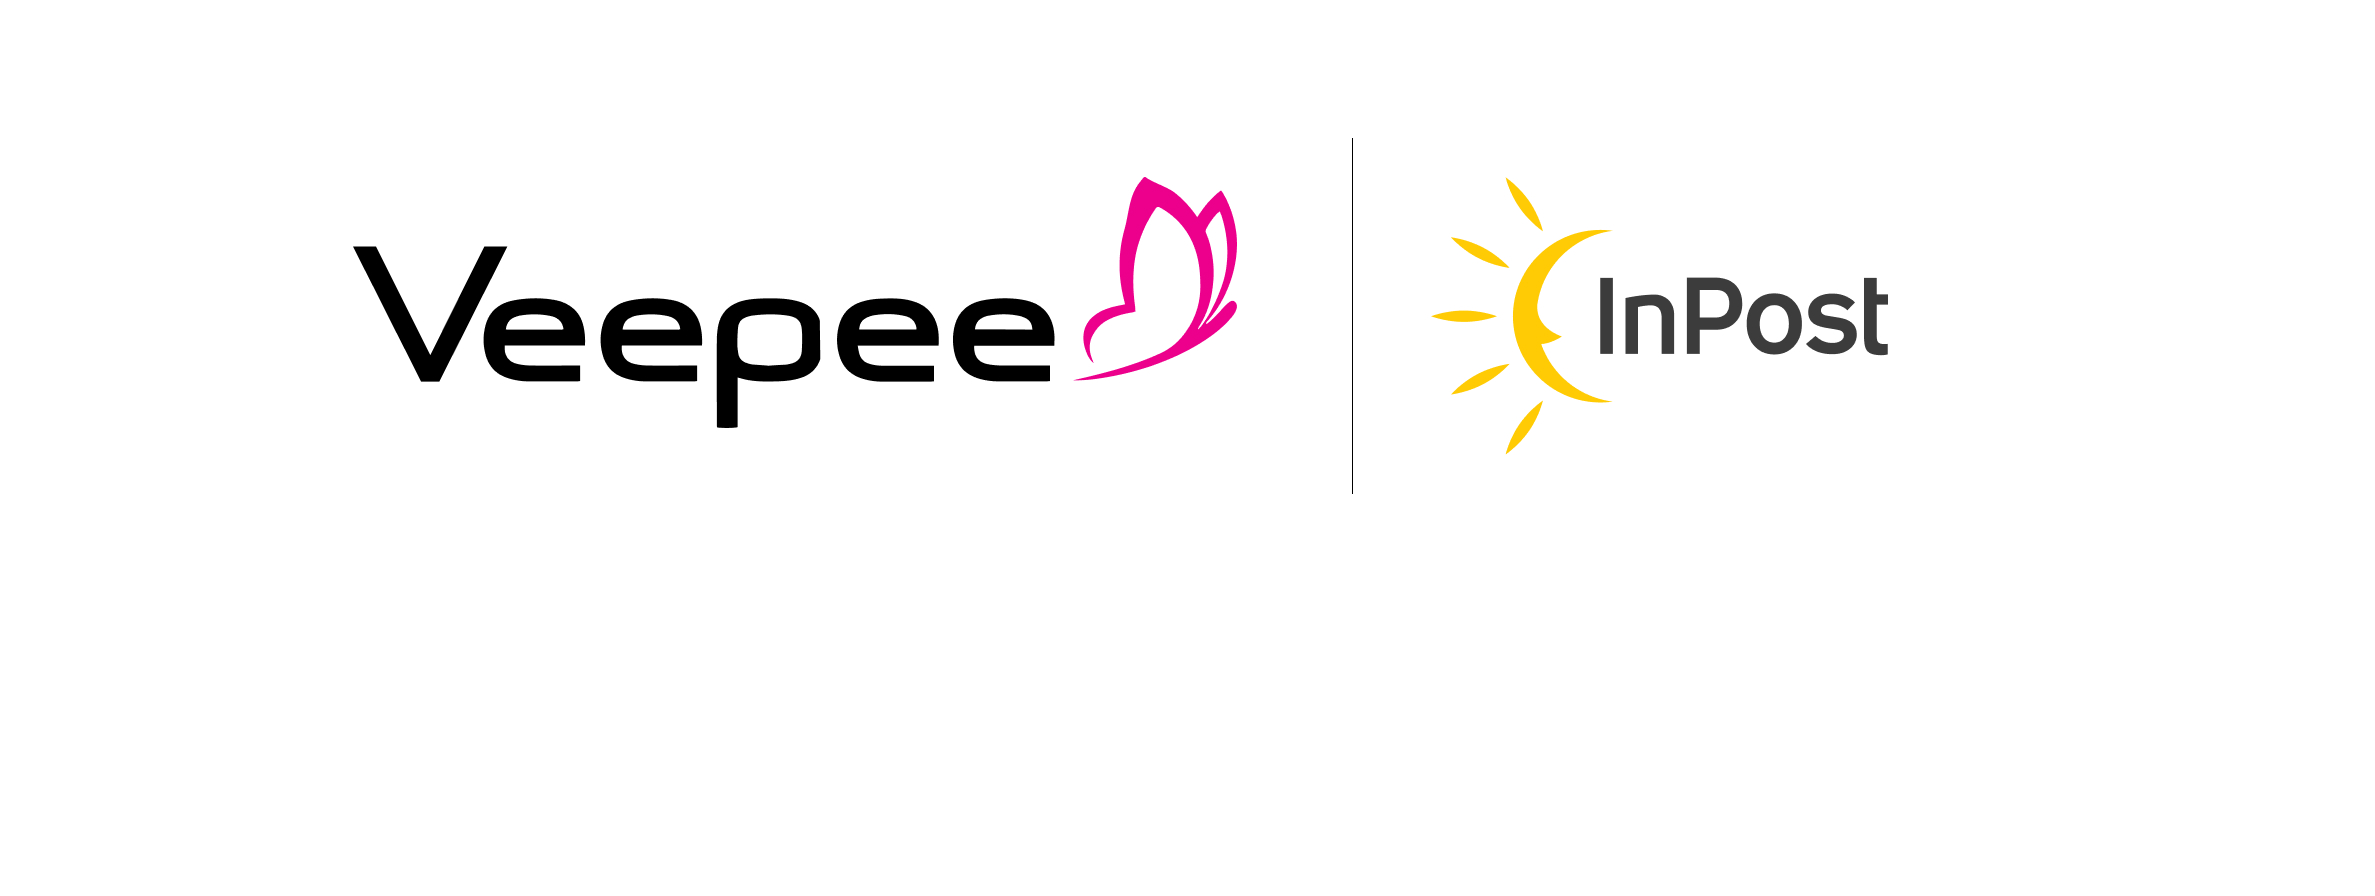 logos de las marcas inpost y Veepee